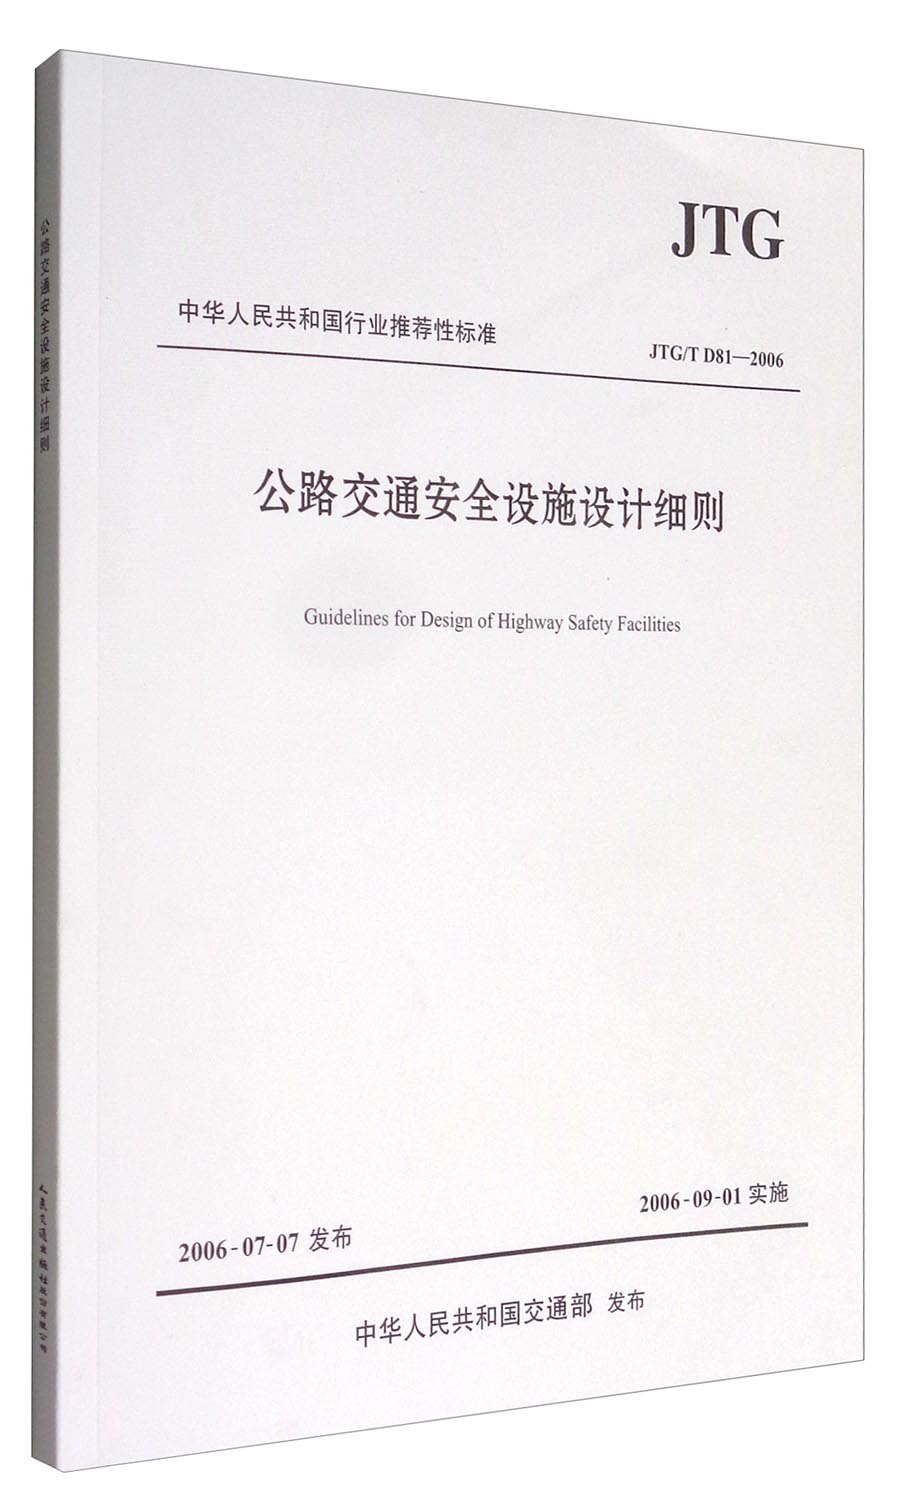 中华人民共和国行业推荐性标准（JTG/T D81-2006）：公路交通安全设施设计细则 word格式下载